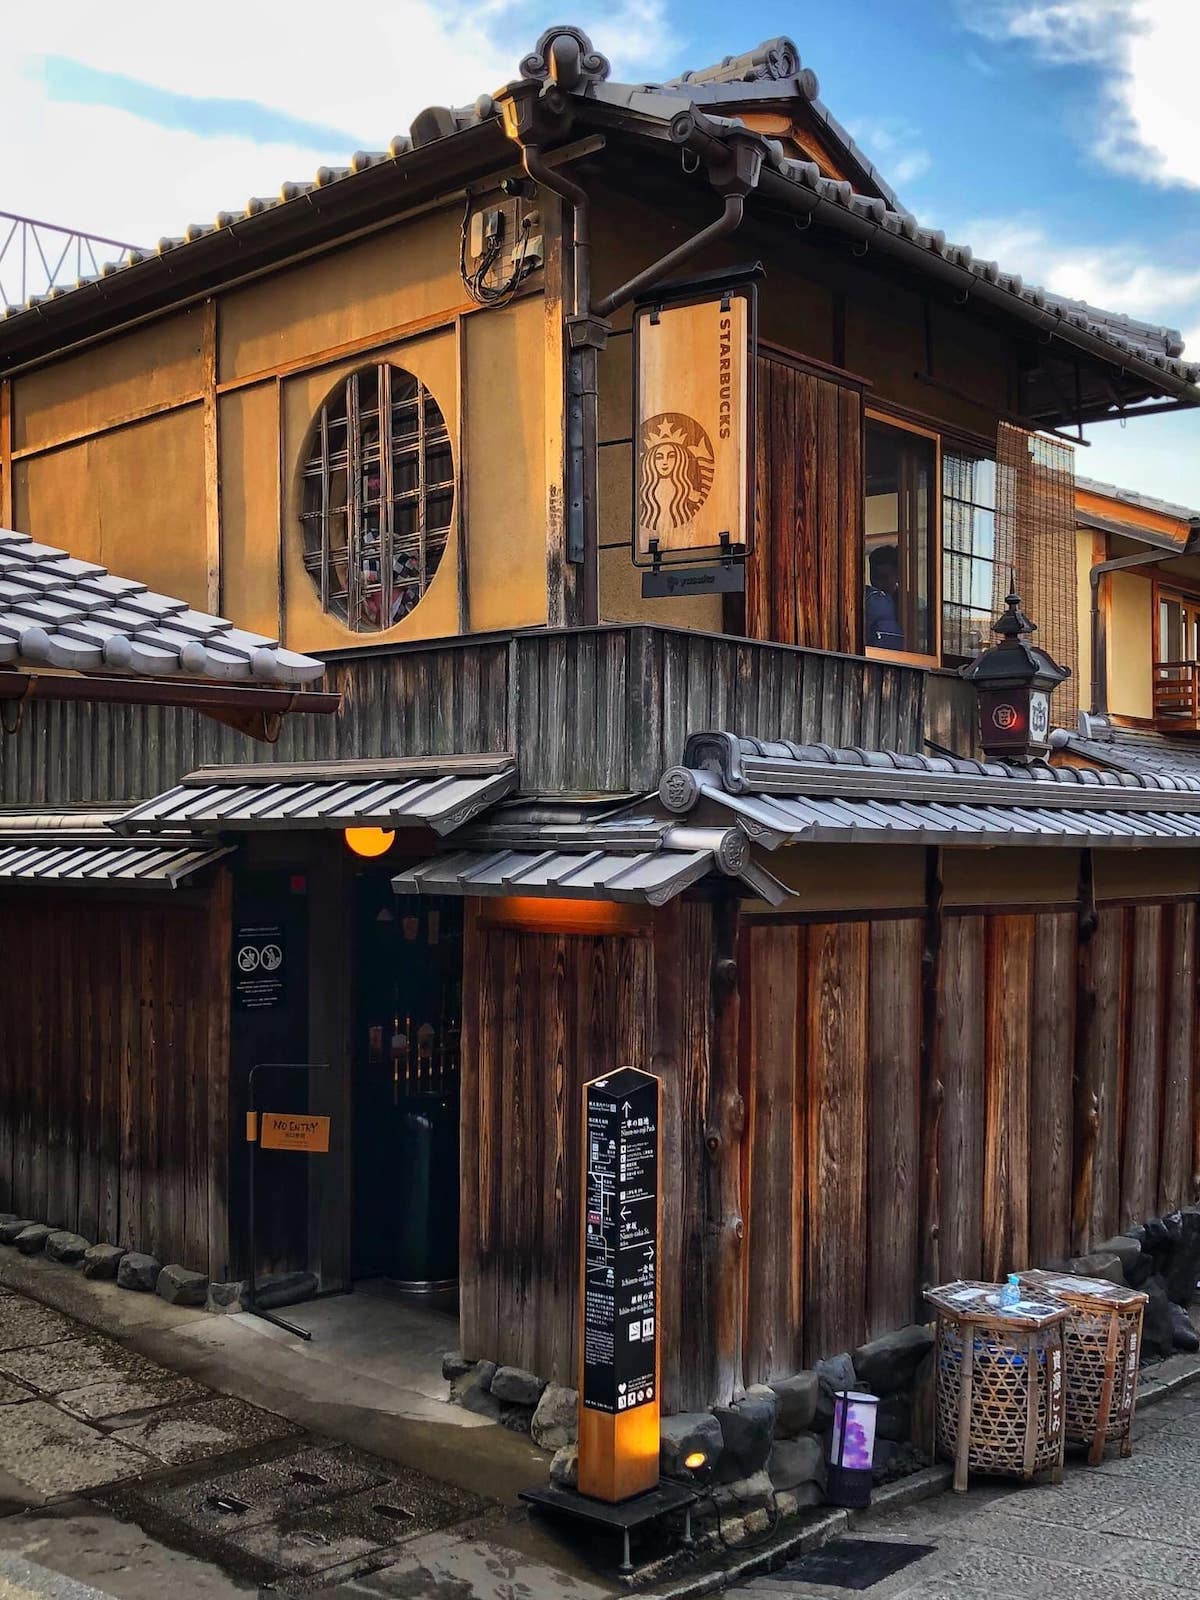 想來開店就得聽我的！京都規定「招牌需古色古香」　沒有紅黃色的麥當勞超罕見